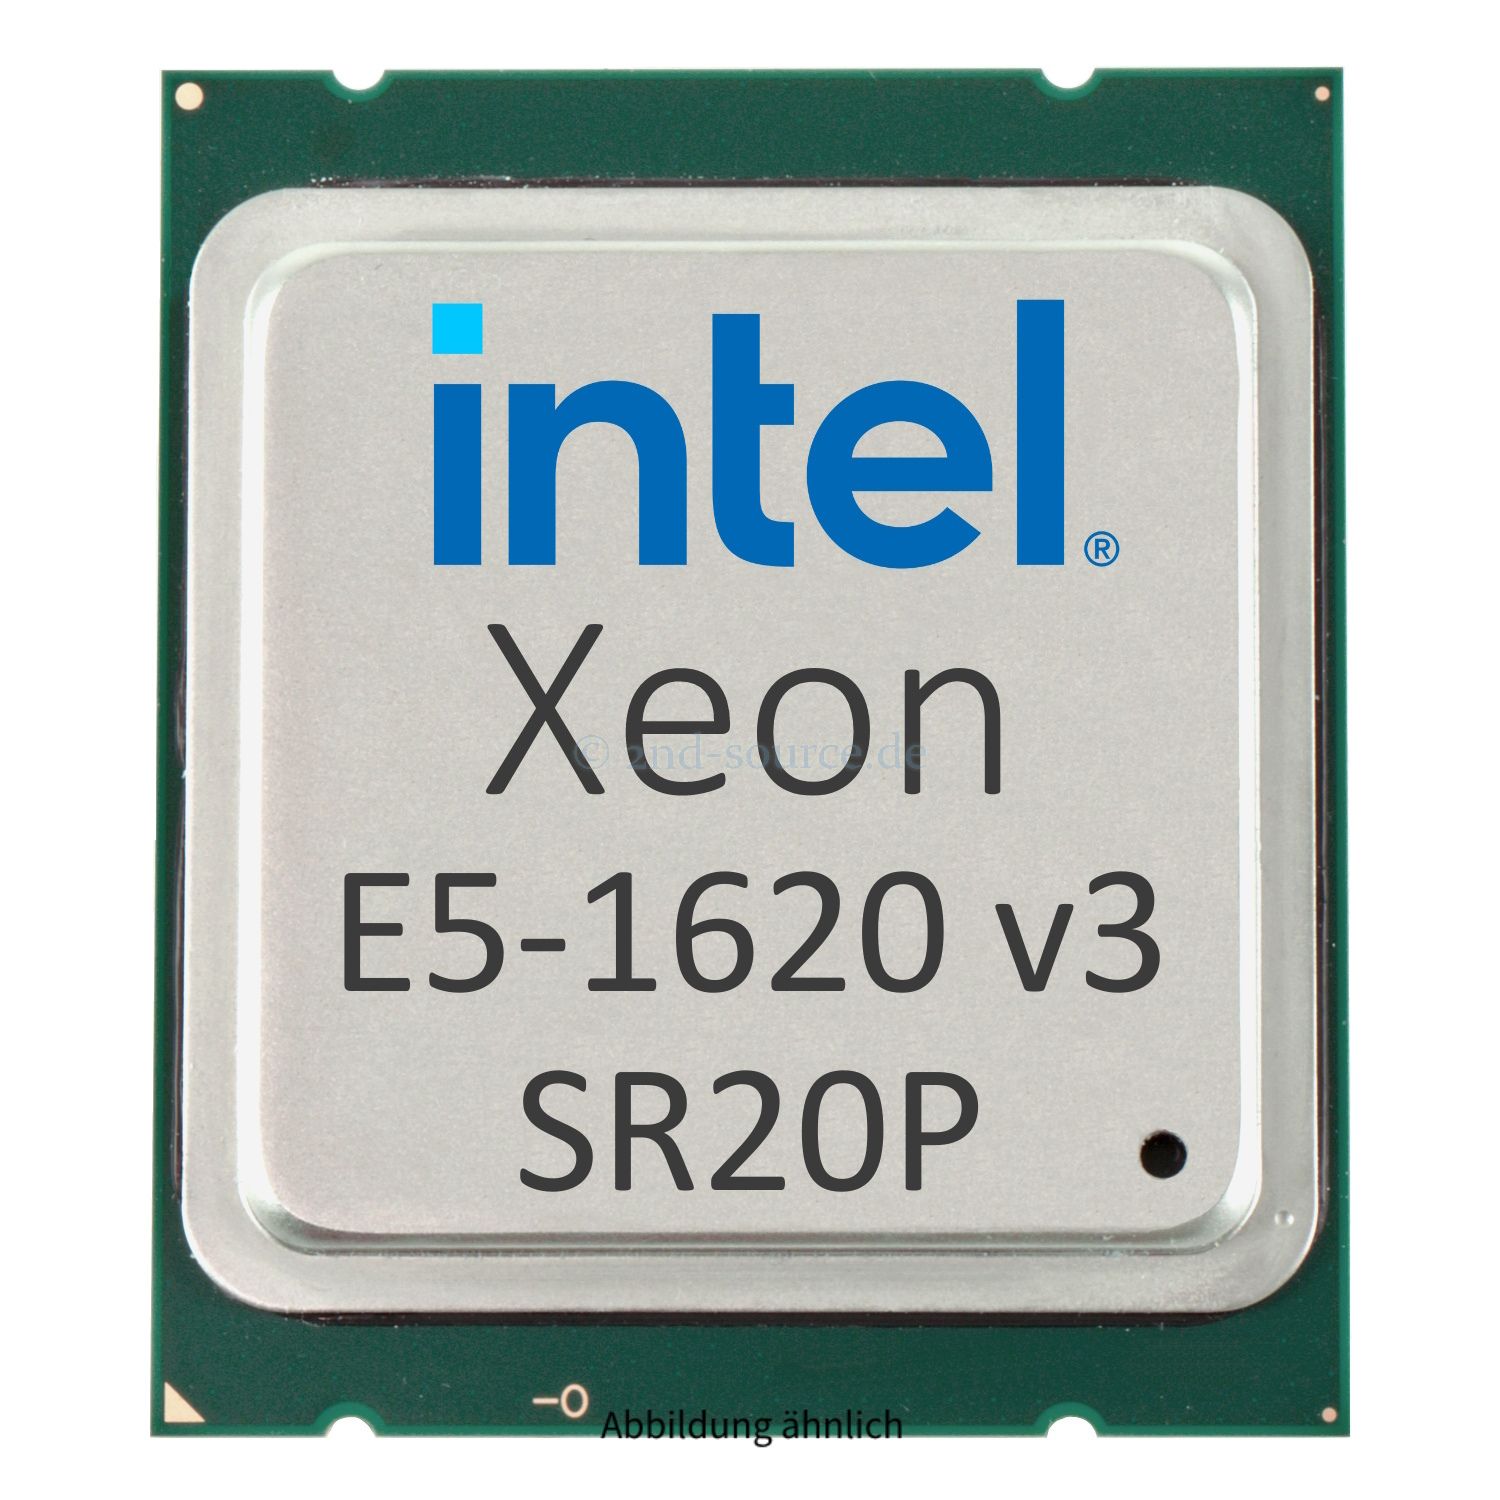 Intel Xeon E5-1620 v3 3.50GHz 10MB 4-Core CPU 140W SR20P CM8064401973600